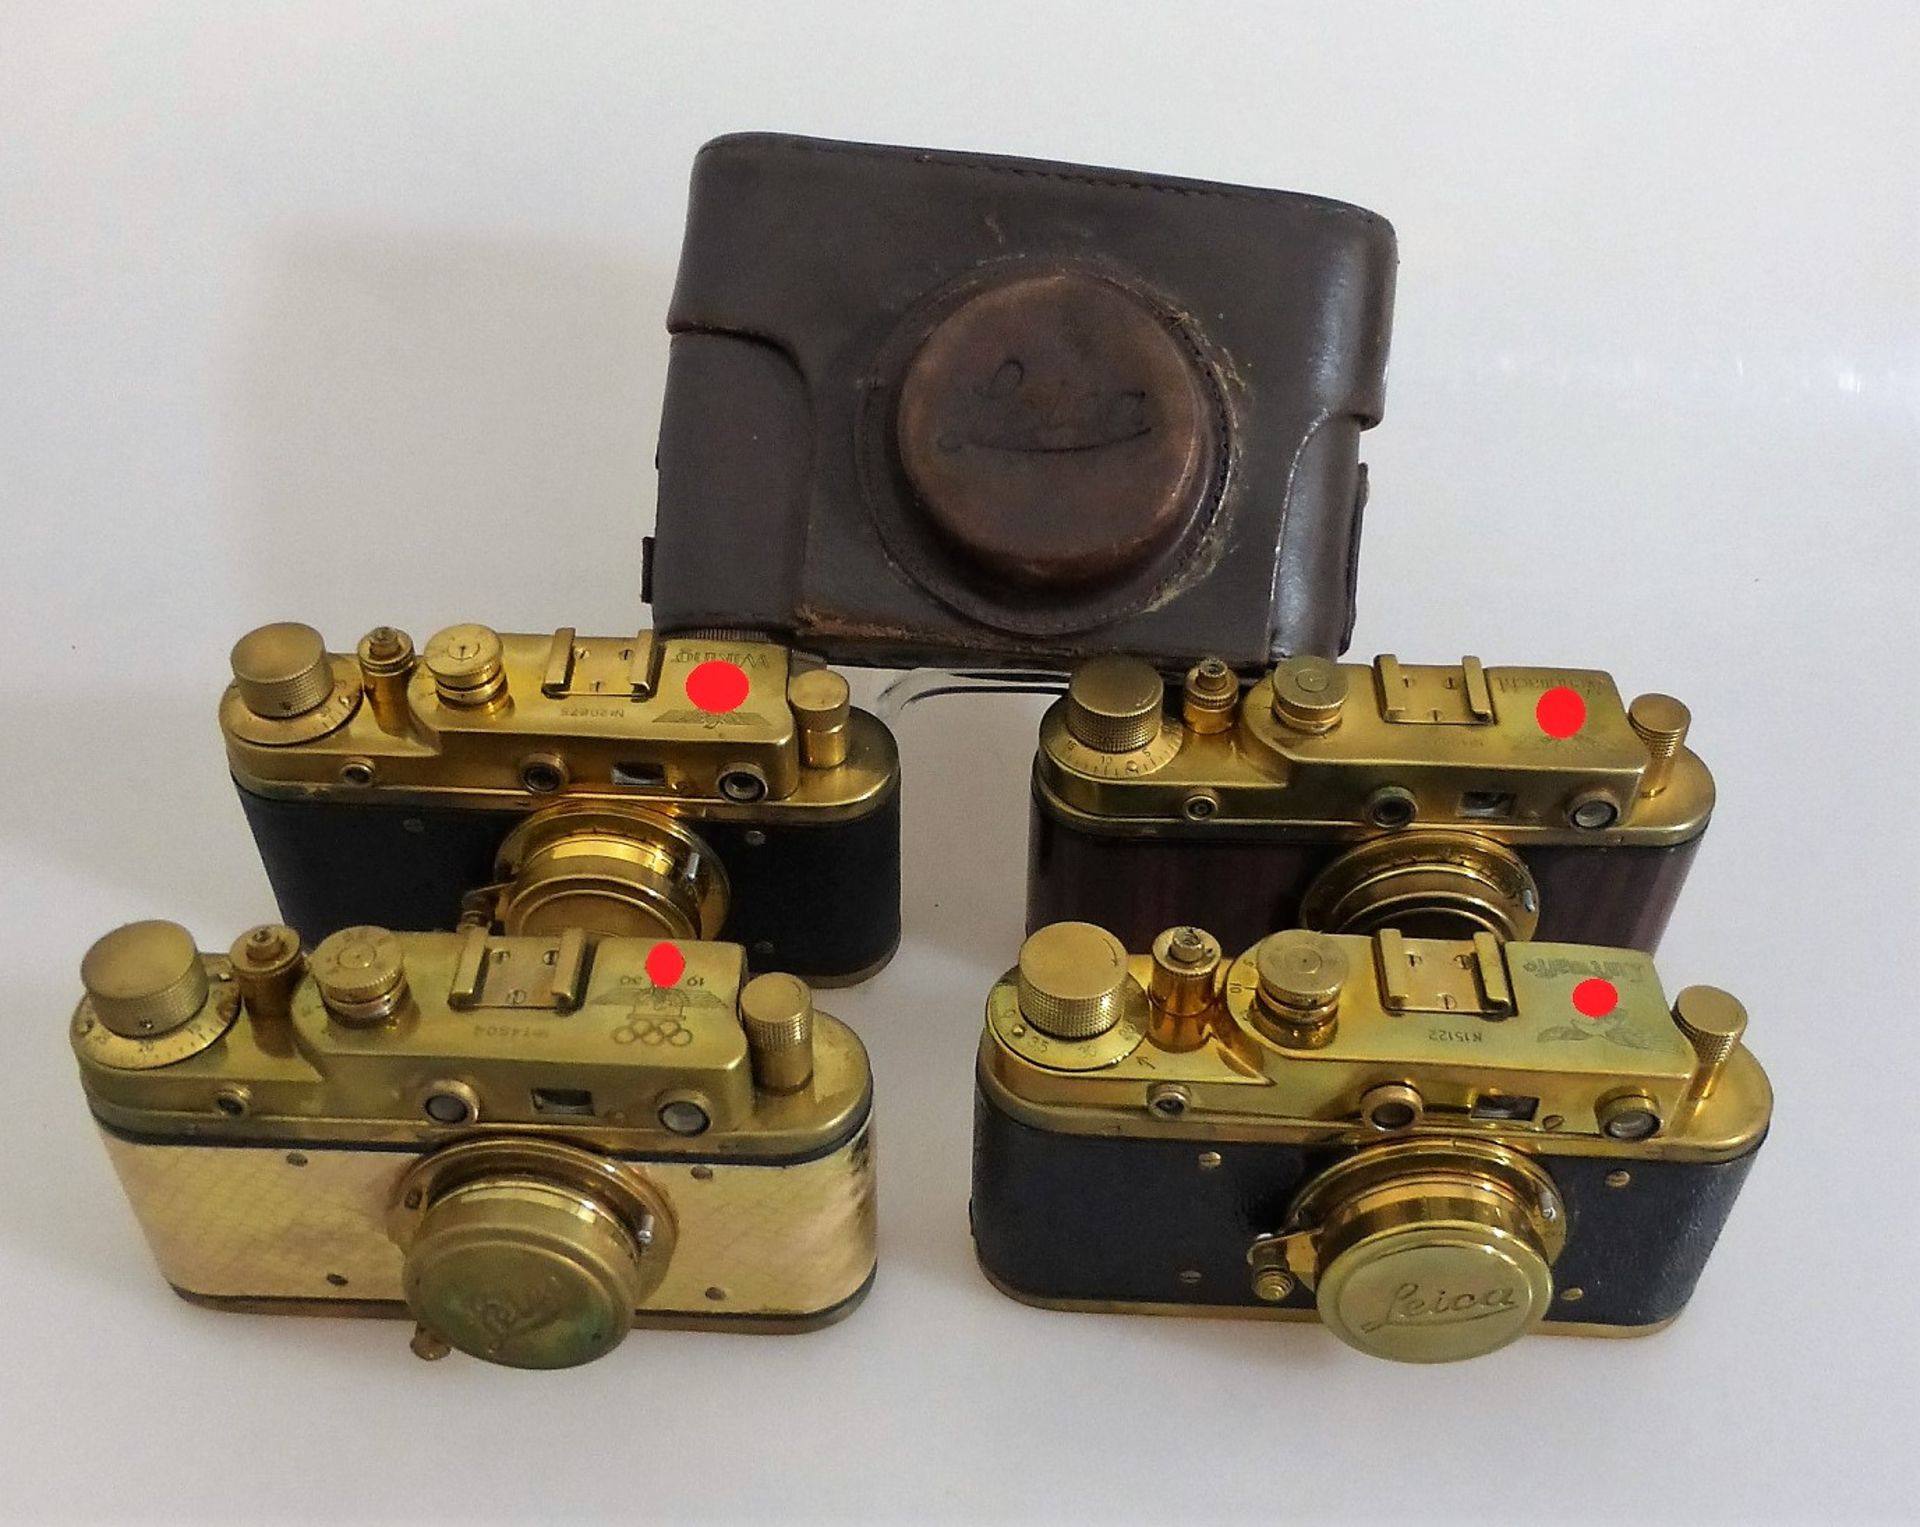 4 Leica Fälschungen, Russland, grav. Reichsadler und Swastika mit "Luftwaffe" -